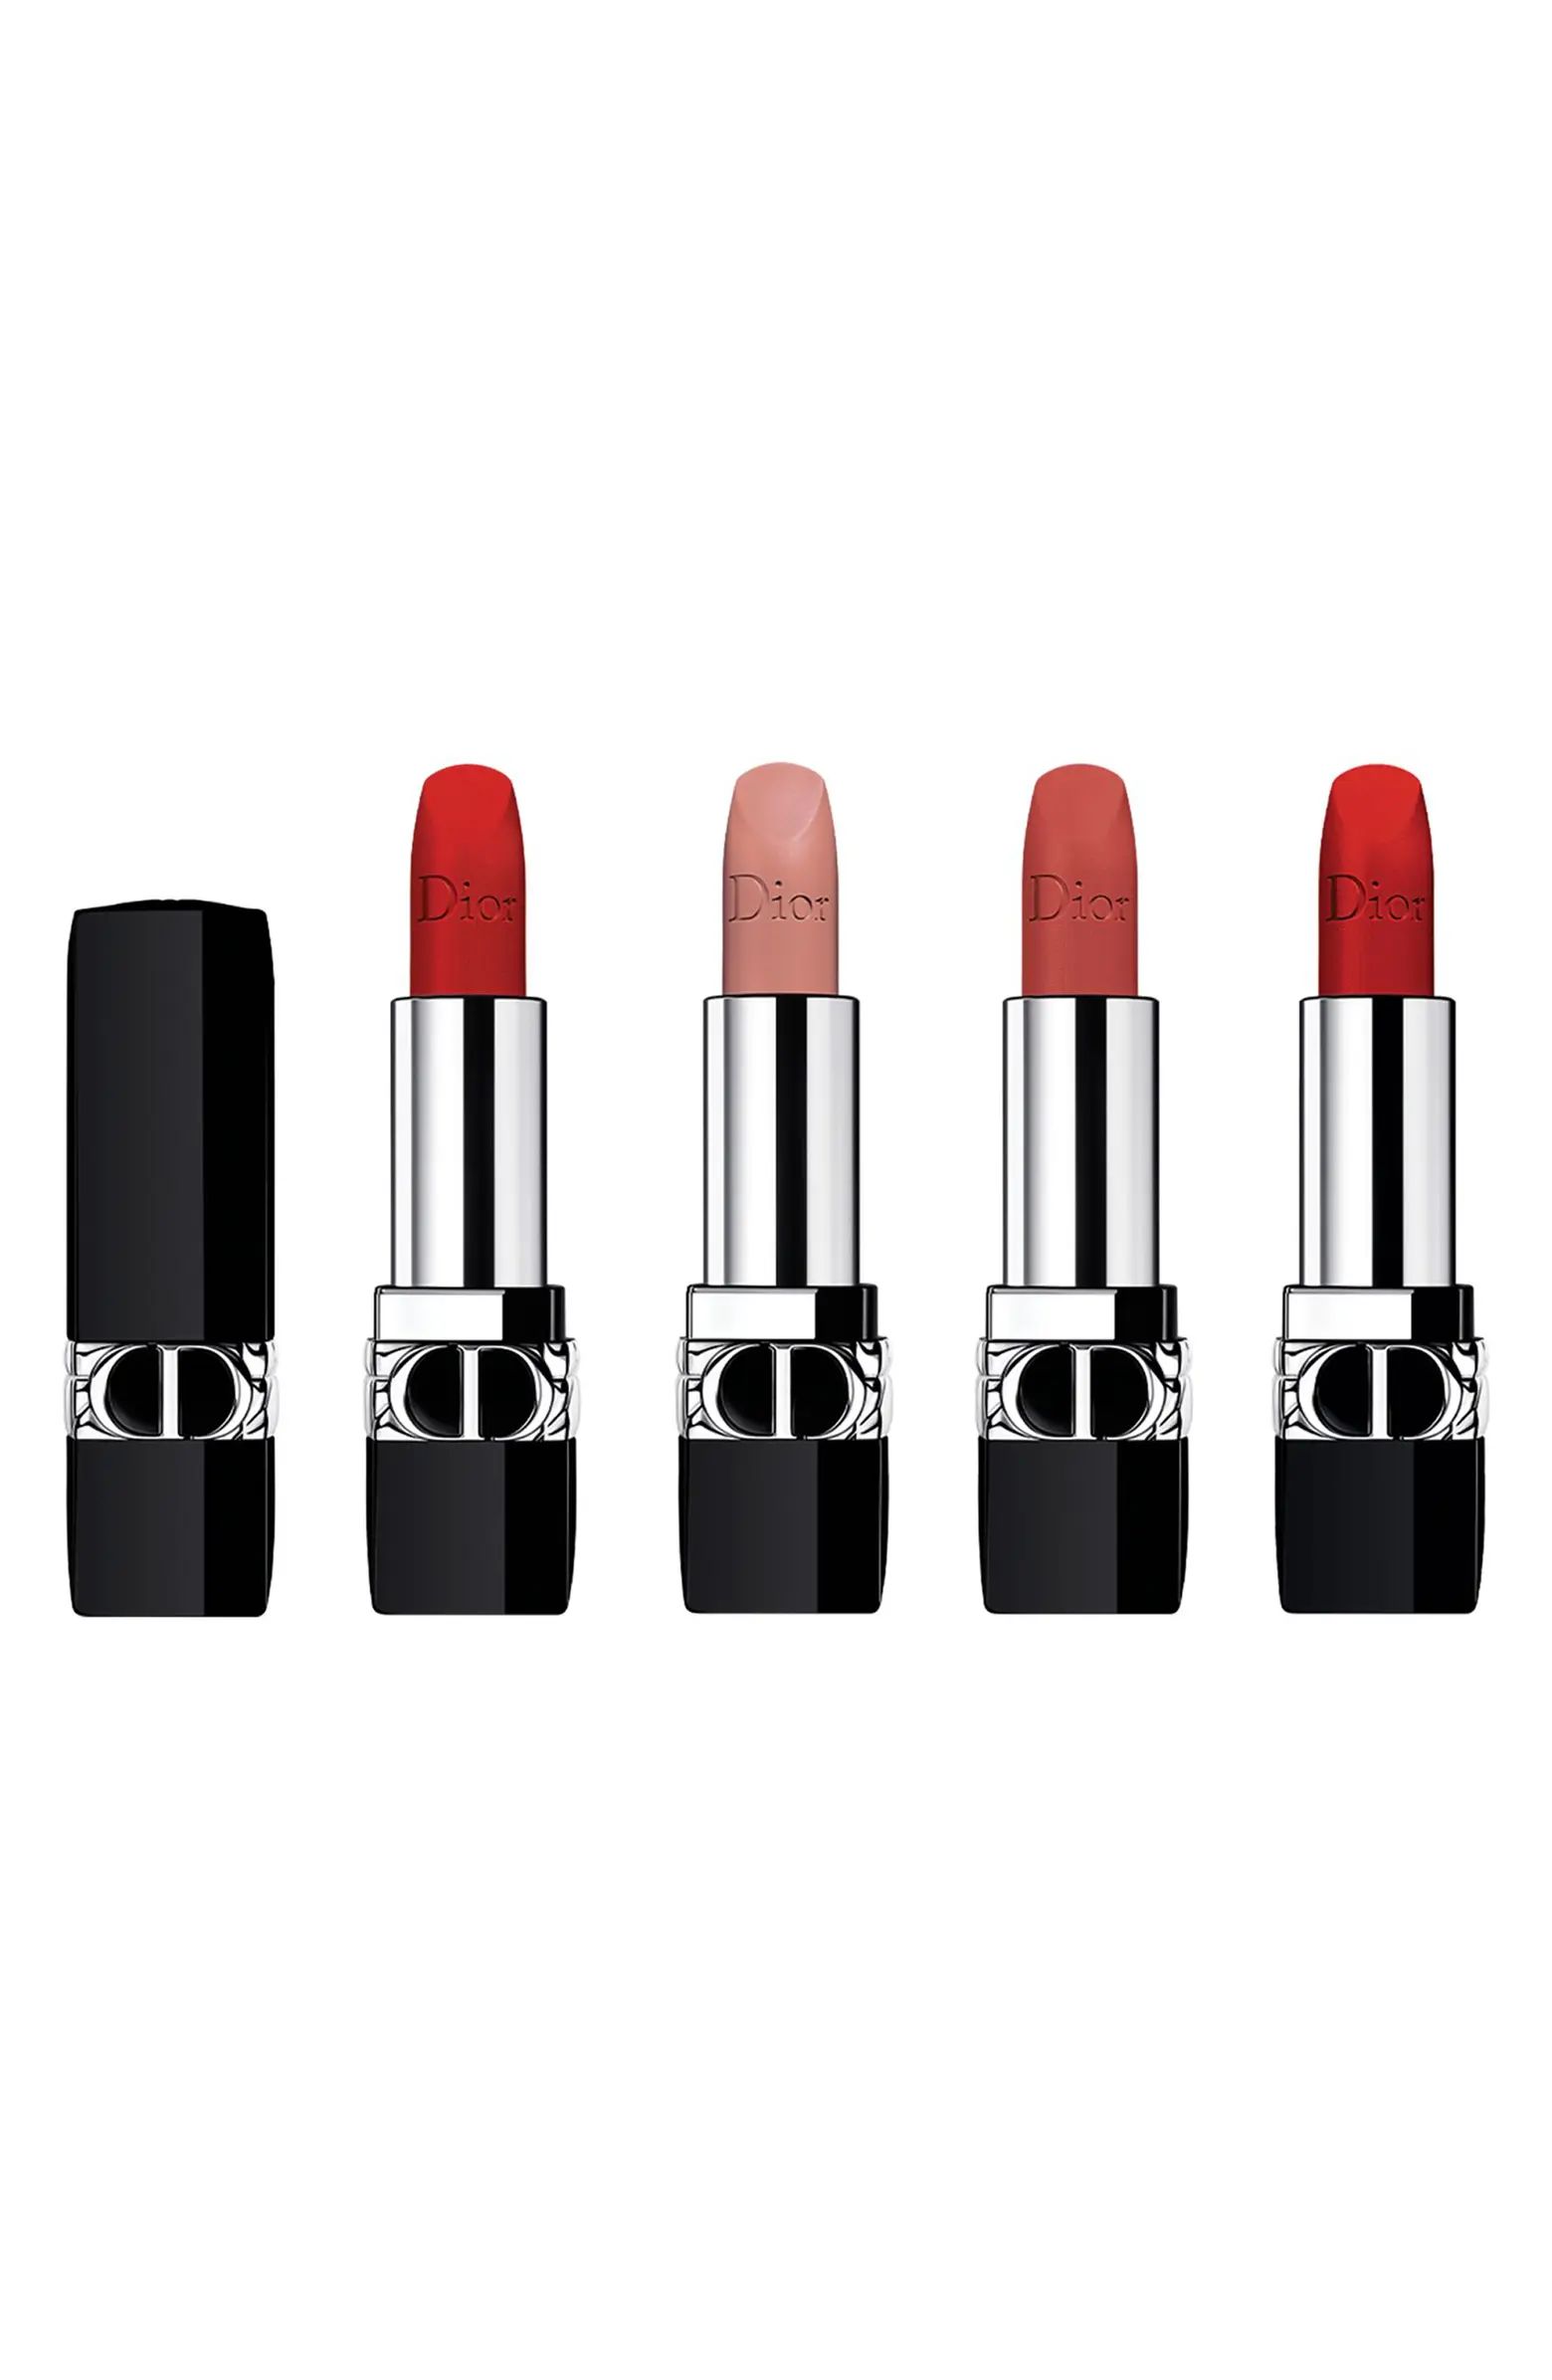 Rouge Dior Lipstick Set $77 Value | Nordstrom